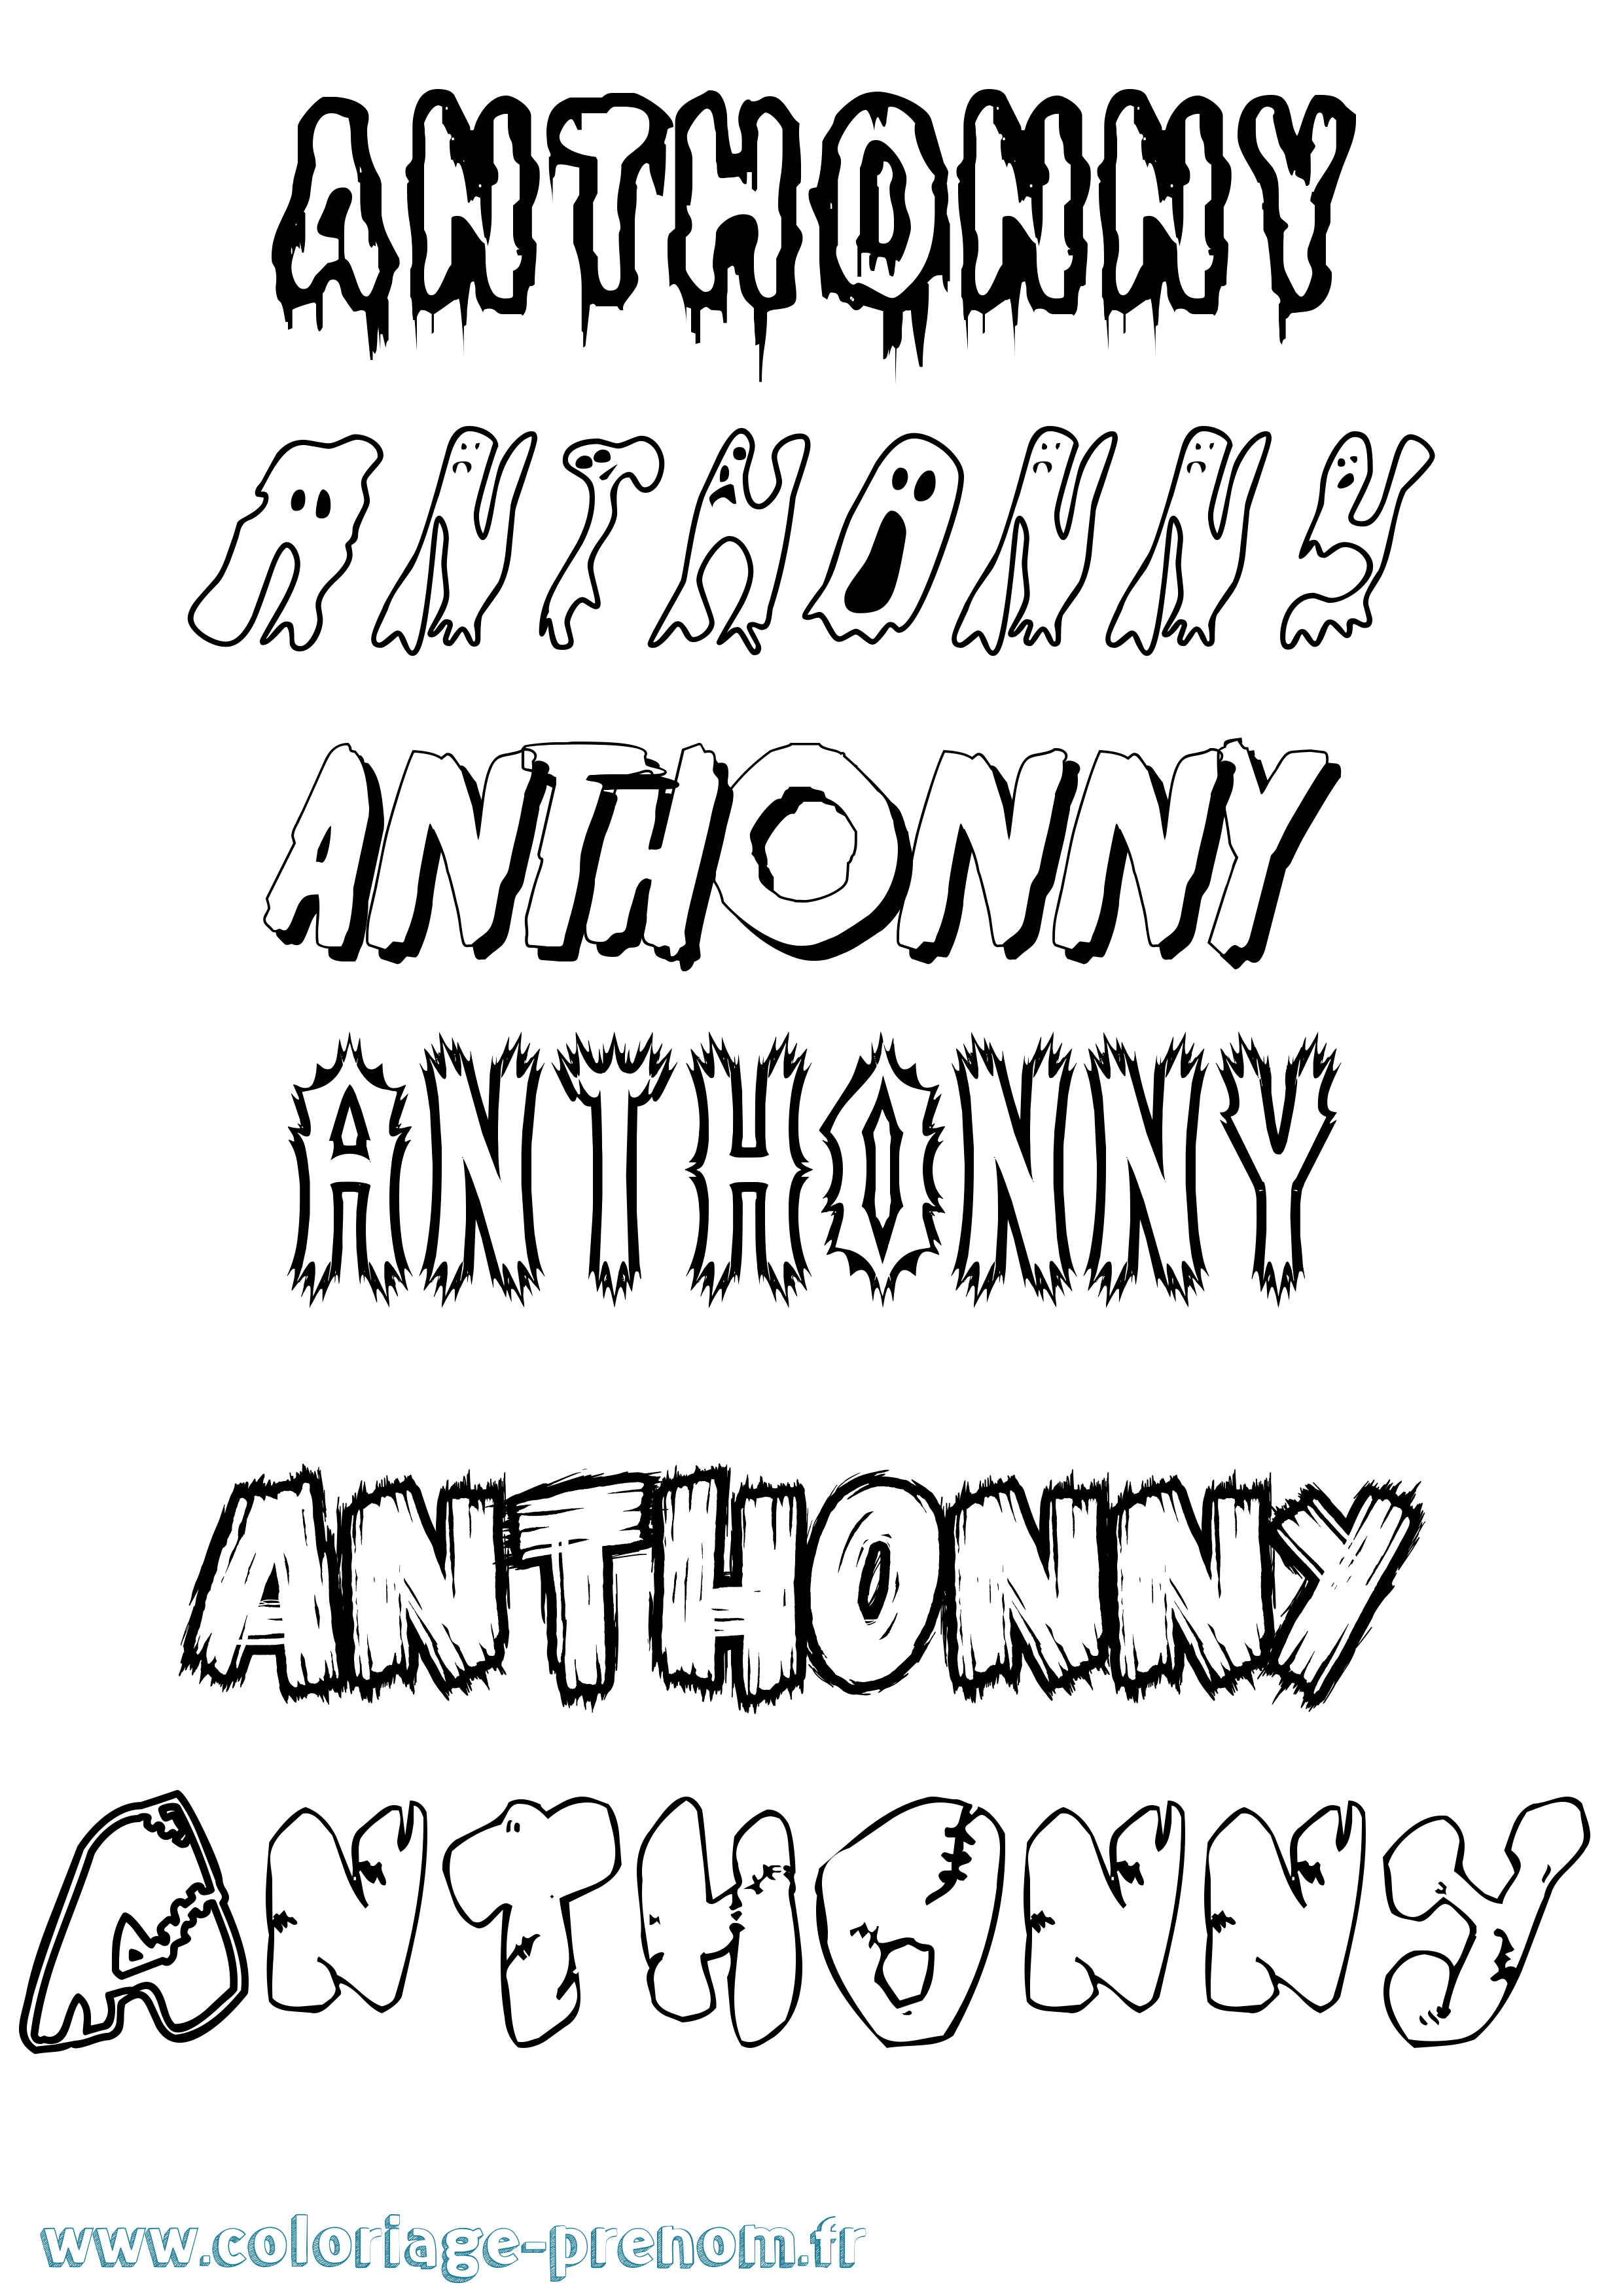 Coloriage prénom Anthonny Frisson